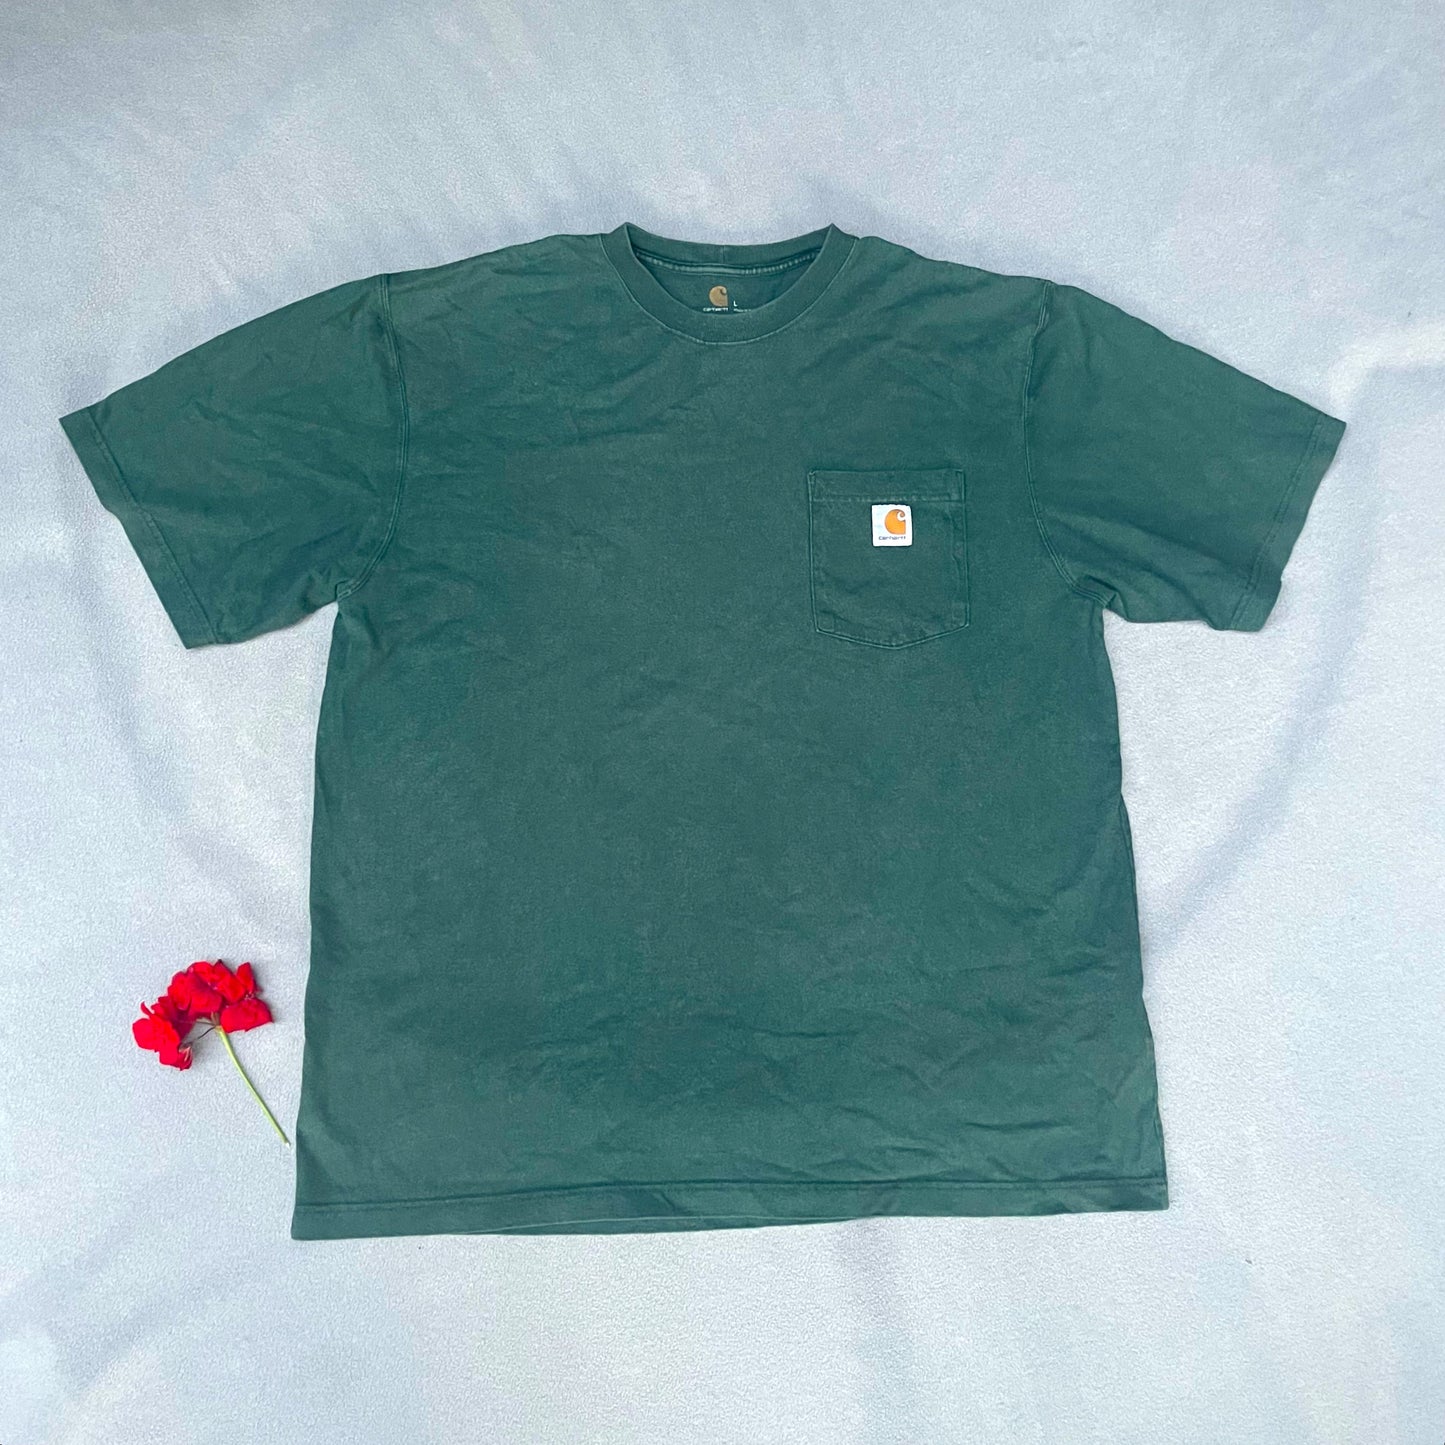 T-Shirt Herren L von Carhartt grün